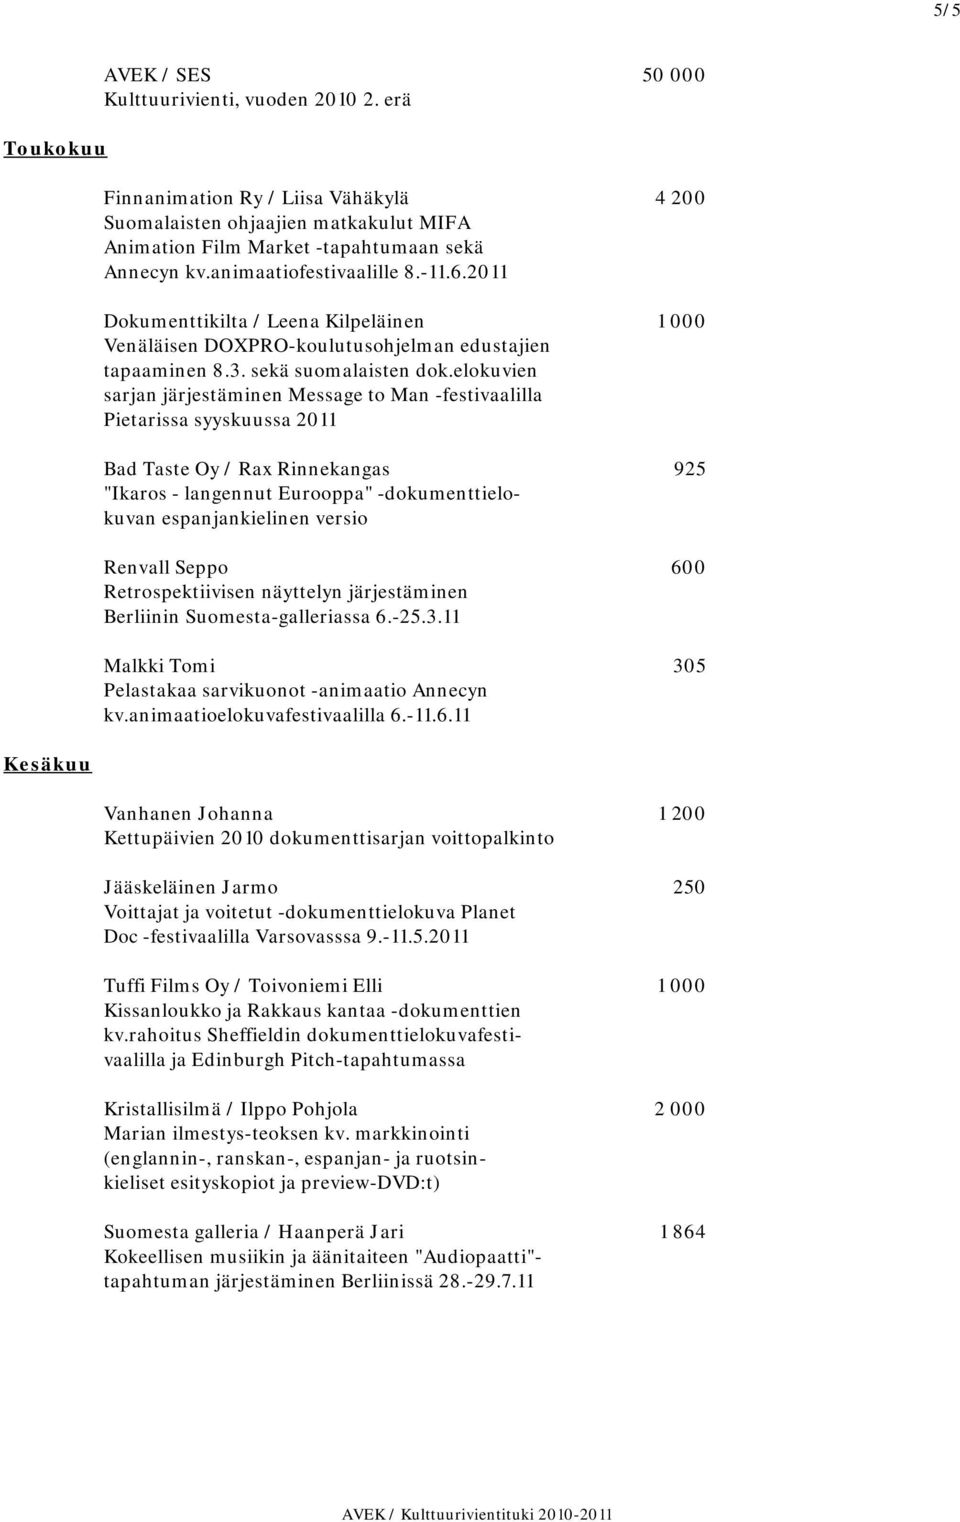 2011 Dokumenttikilta / Leena Kilpeläinen 1 000 Venäläisen DOXPRO-koulutusohjelman edustajien tapaaminen 8.3. sekä suomalaisten dok.